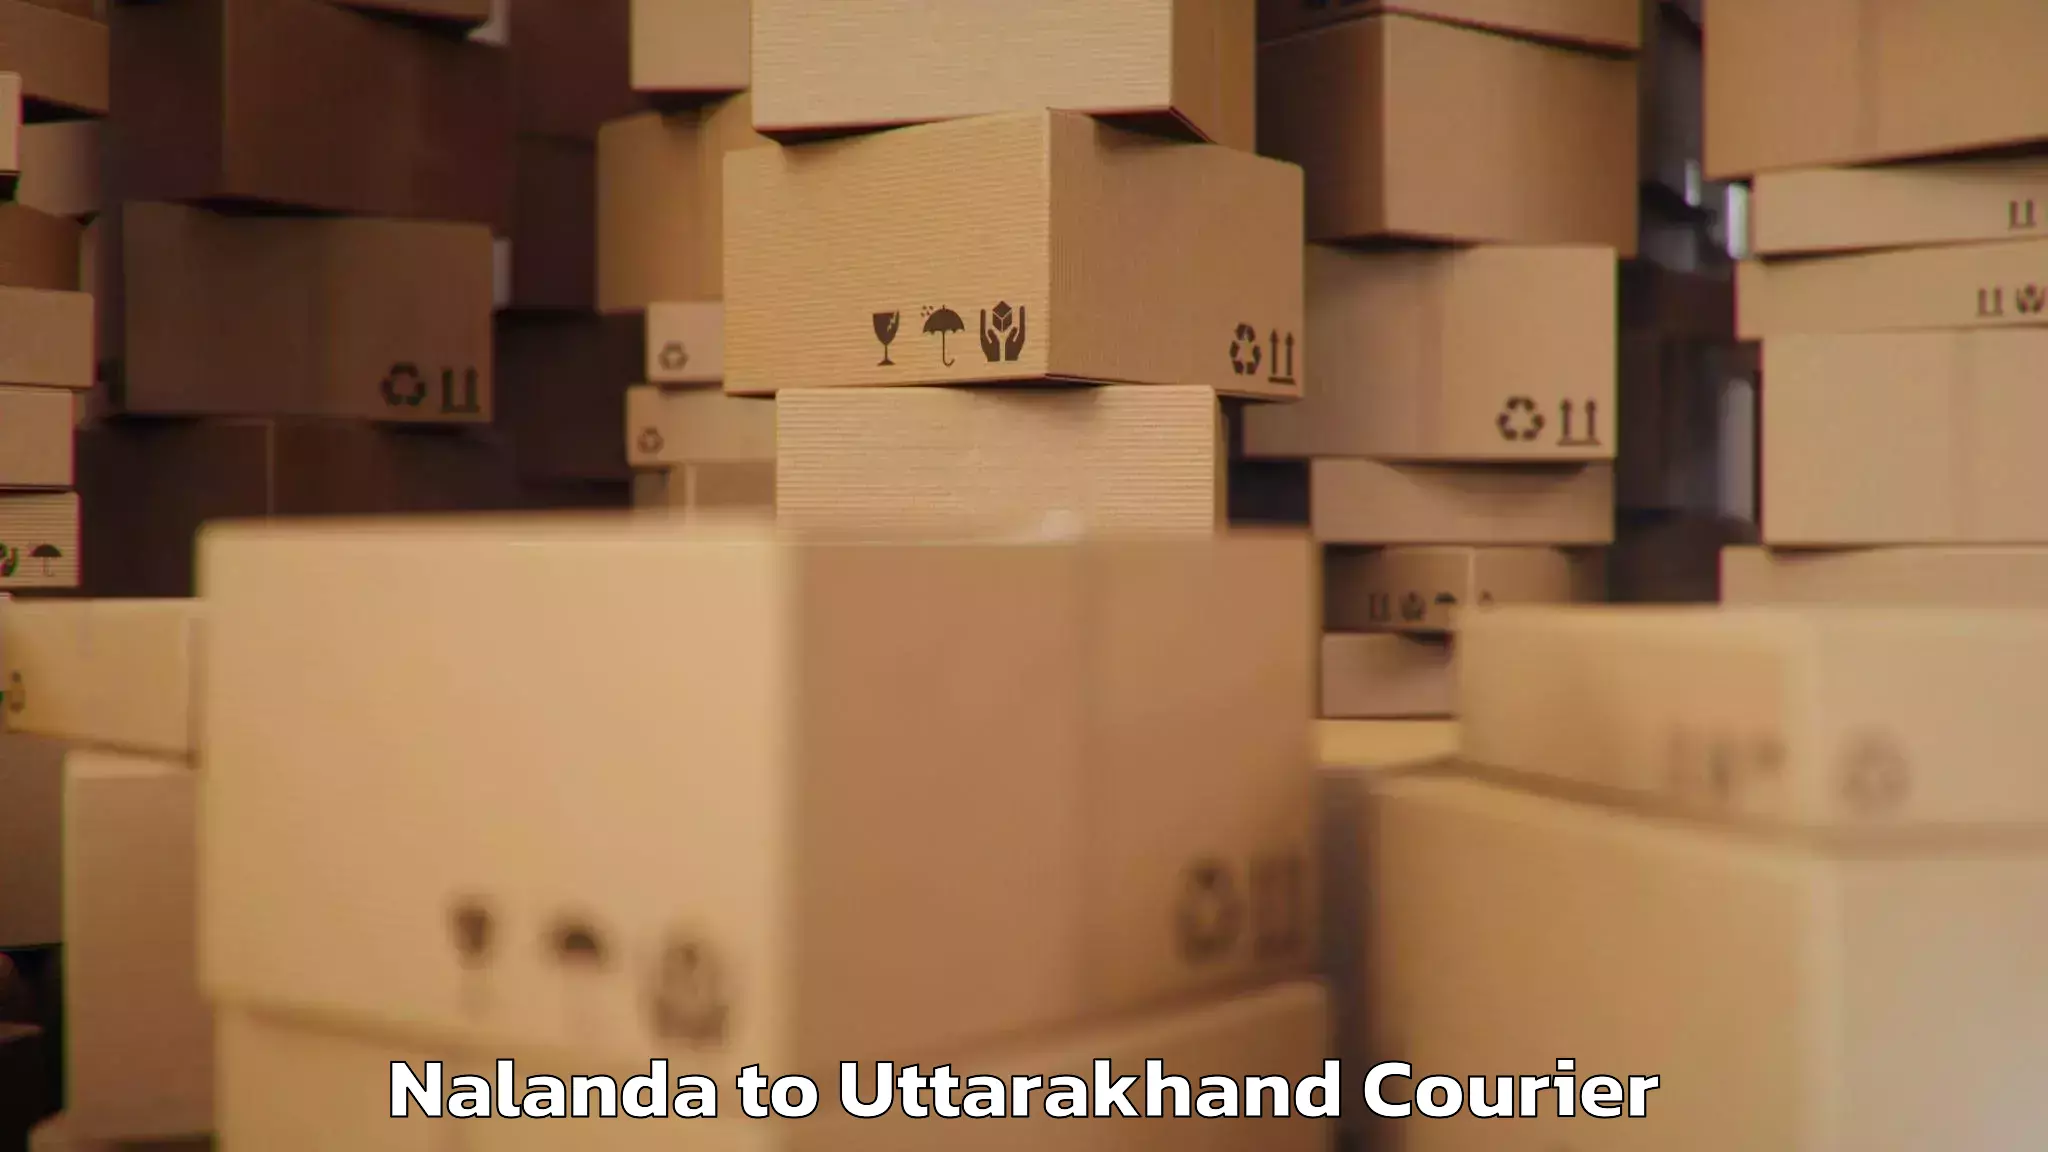 Baggage transport scheduler Nalanda to IIT Roorkee